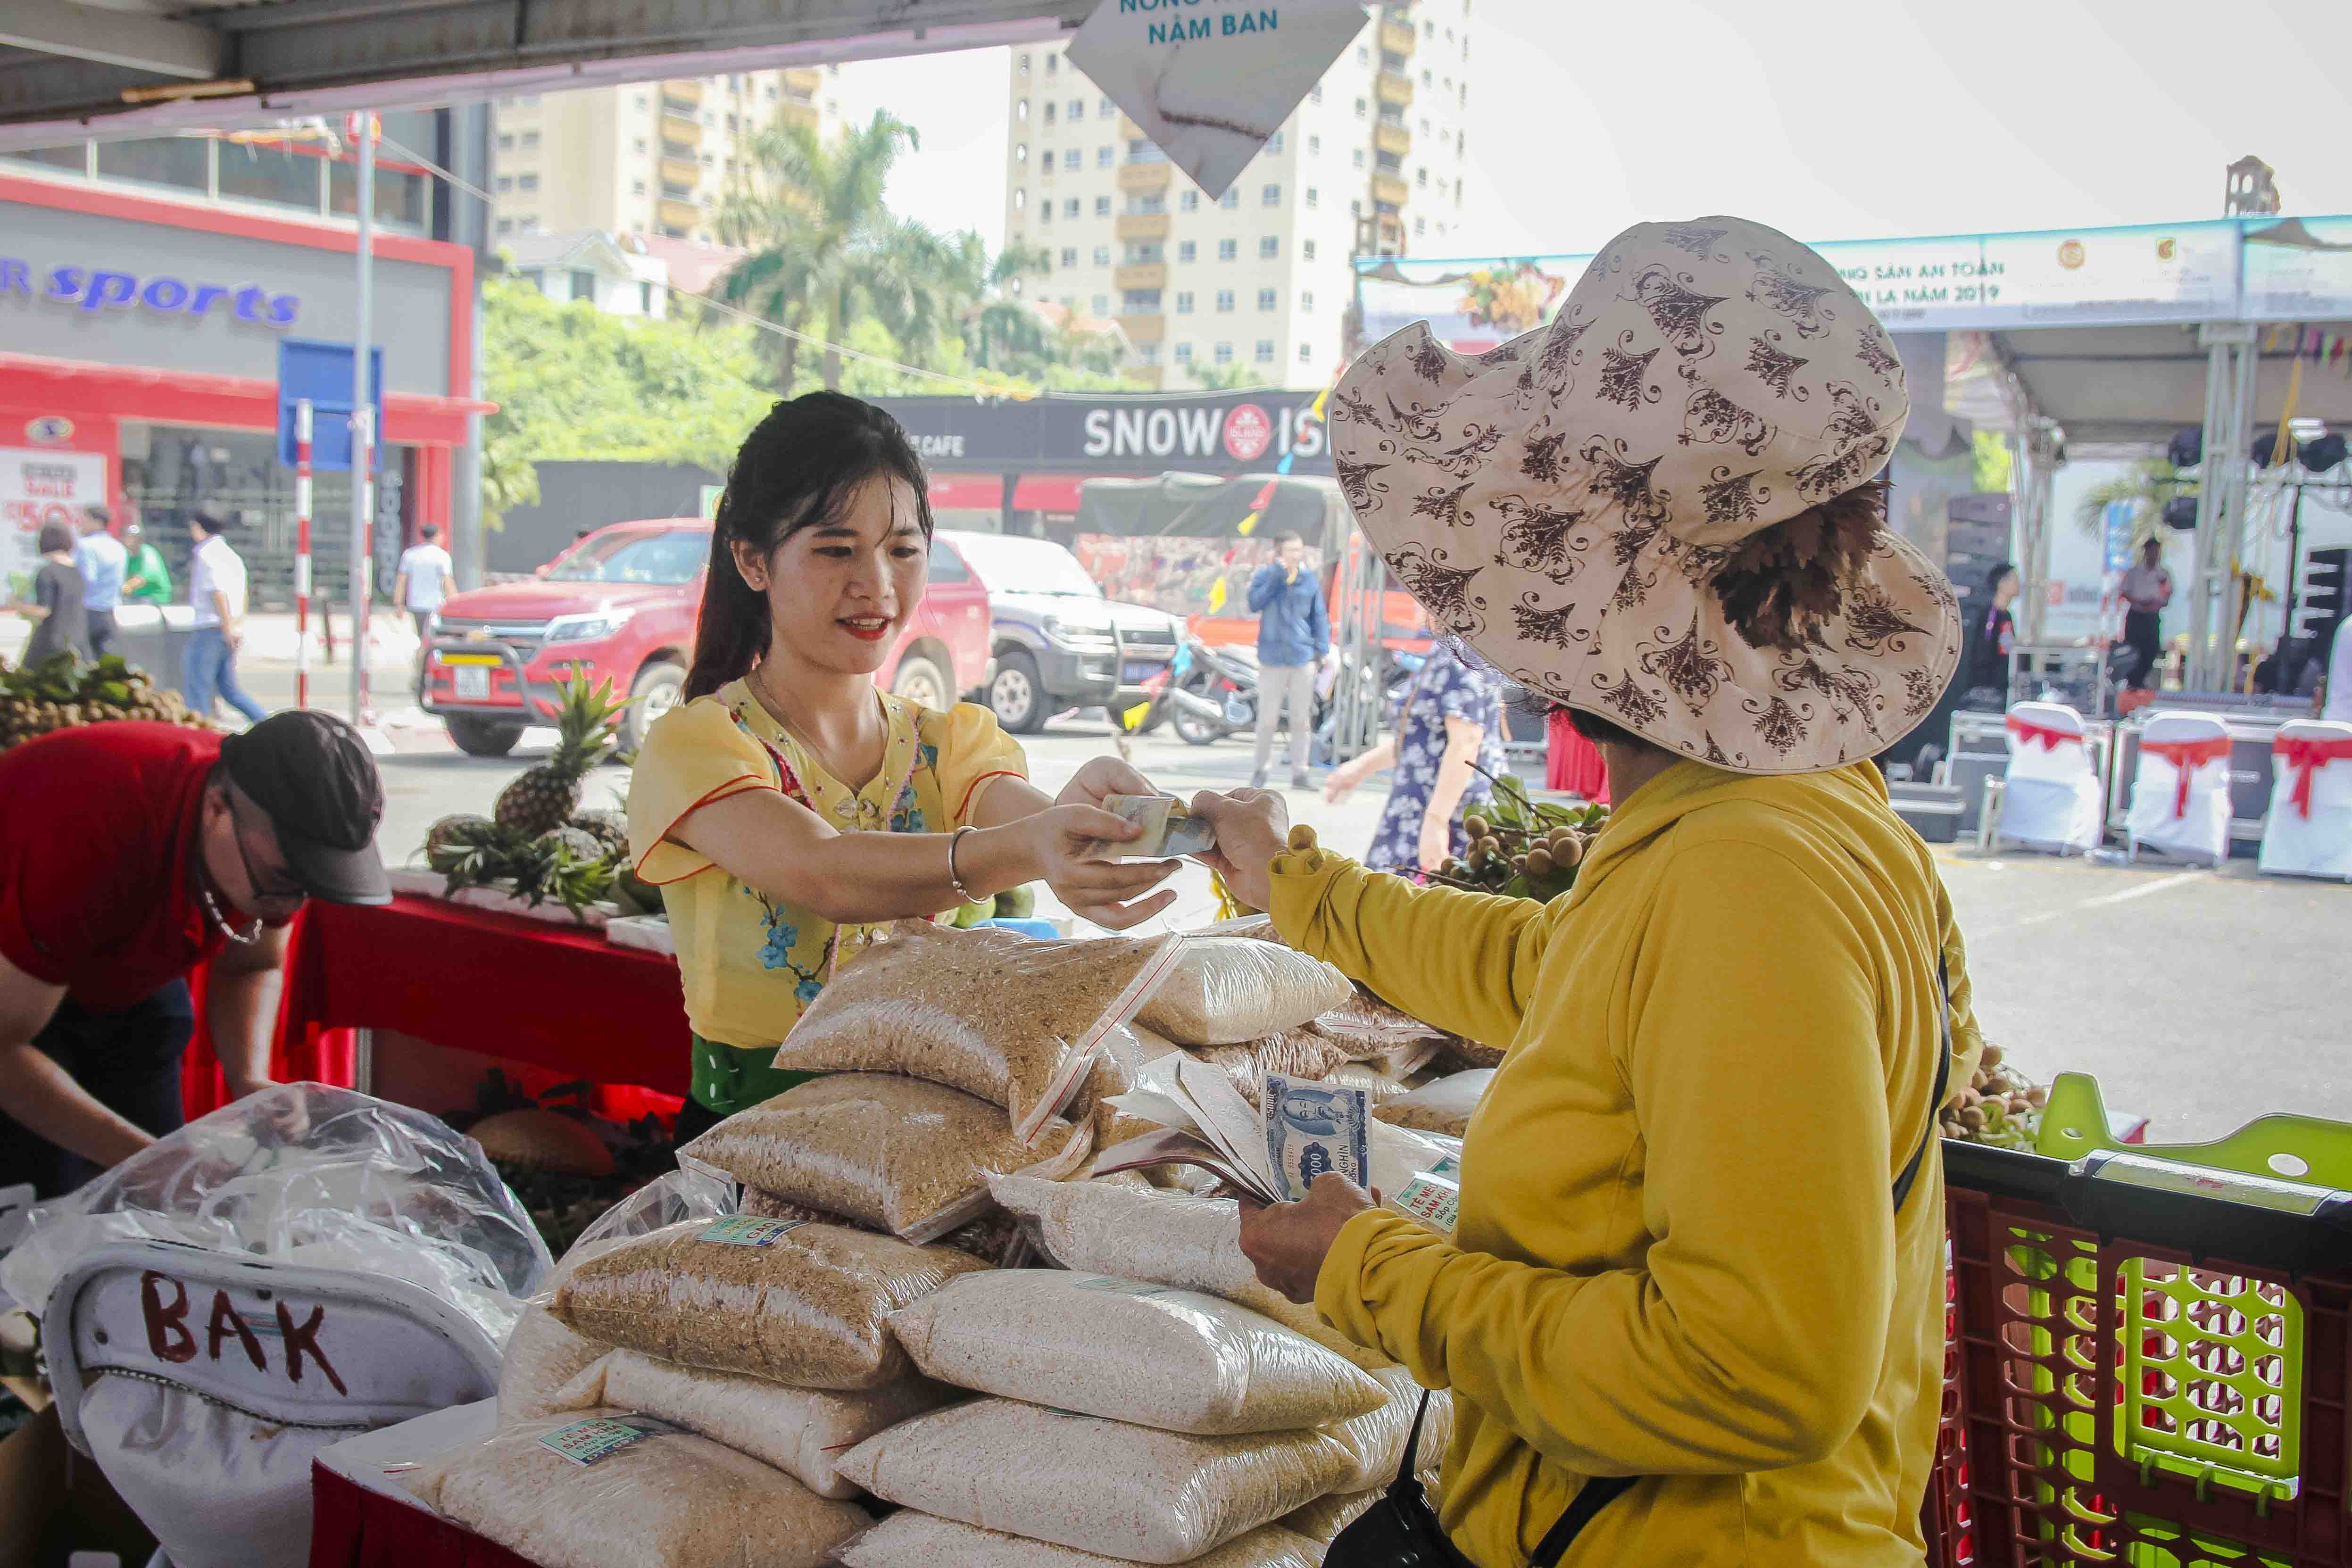 Tuần lễ Nhãn và Nông sản an toàn tỉnh Sơn La năm 2019